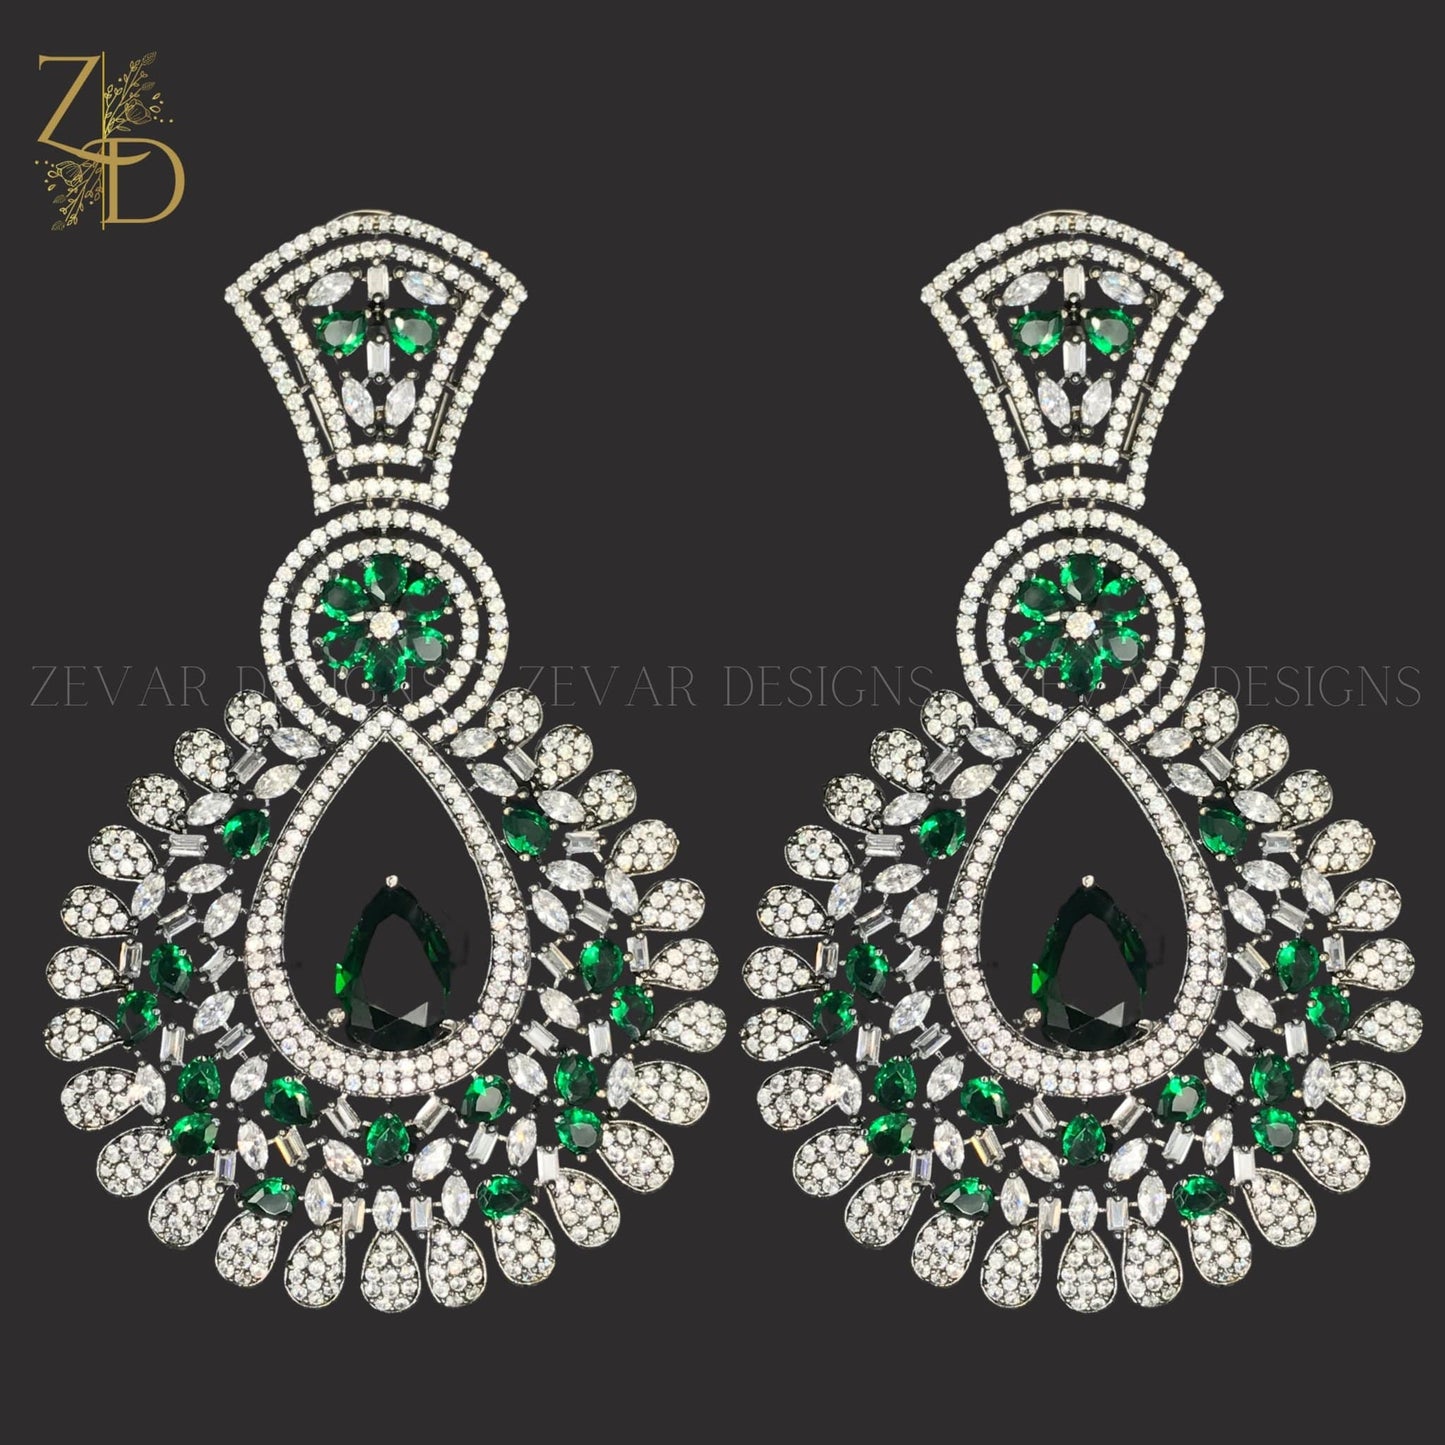 Zevar Designs Zircon Earrings Zircon Earrings - Emerald Green